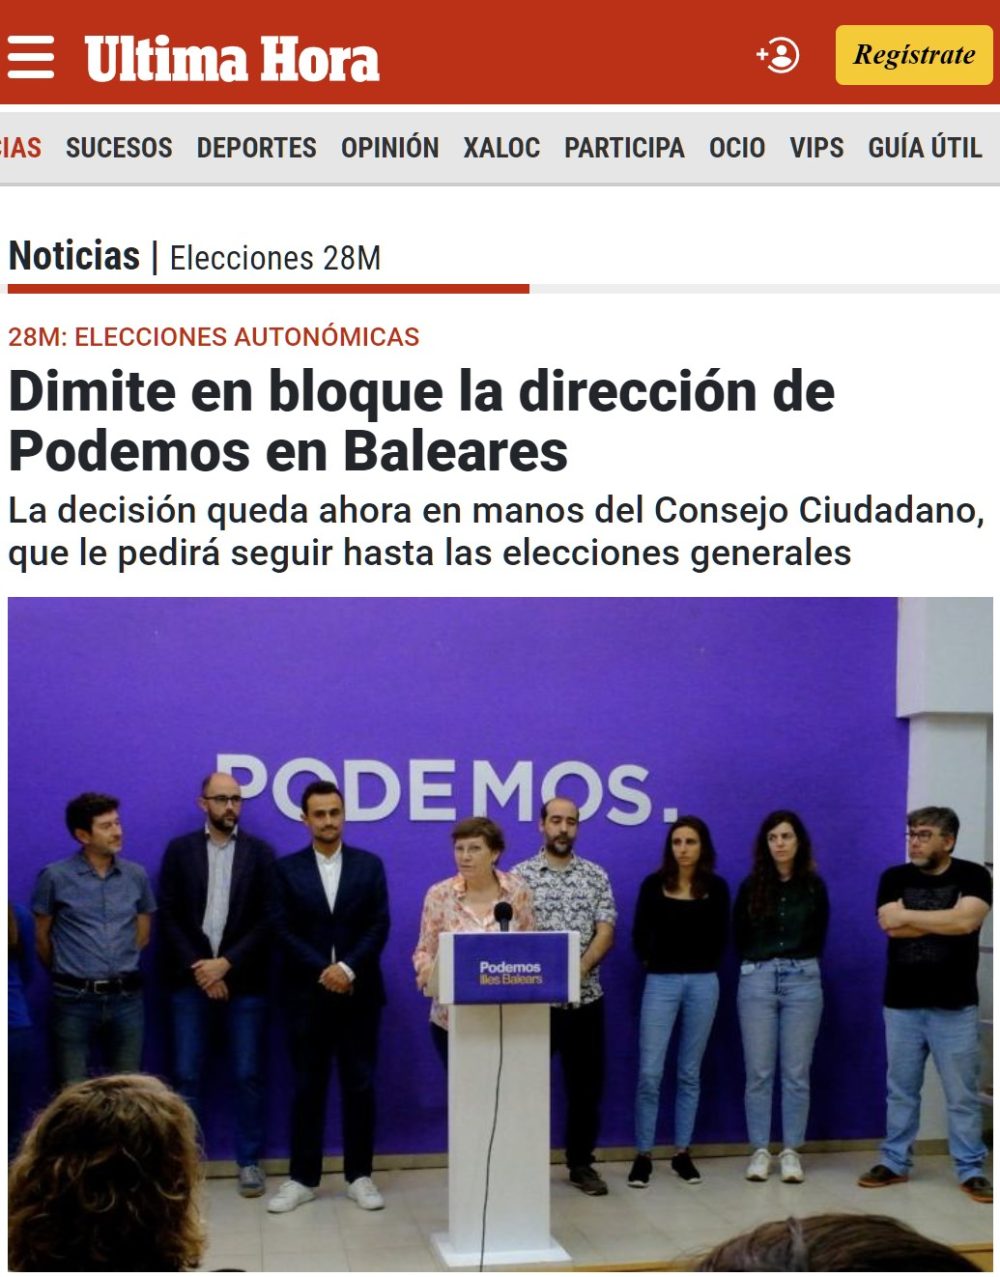 Dimite la dirección de Podemos Baleares